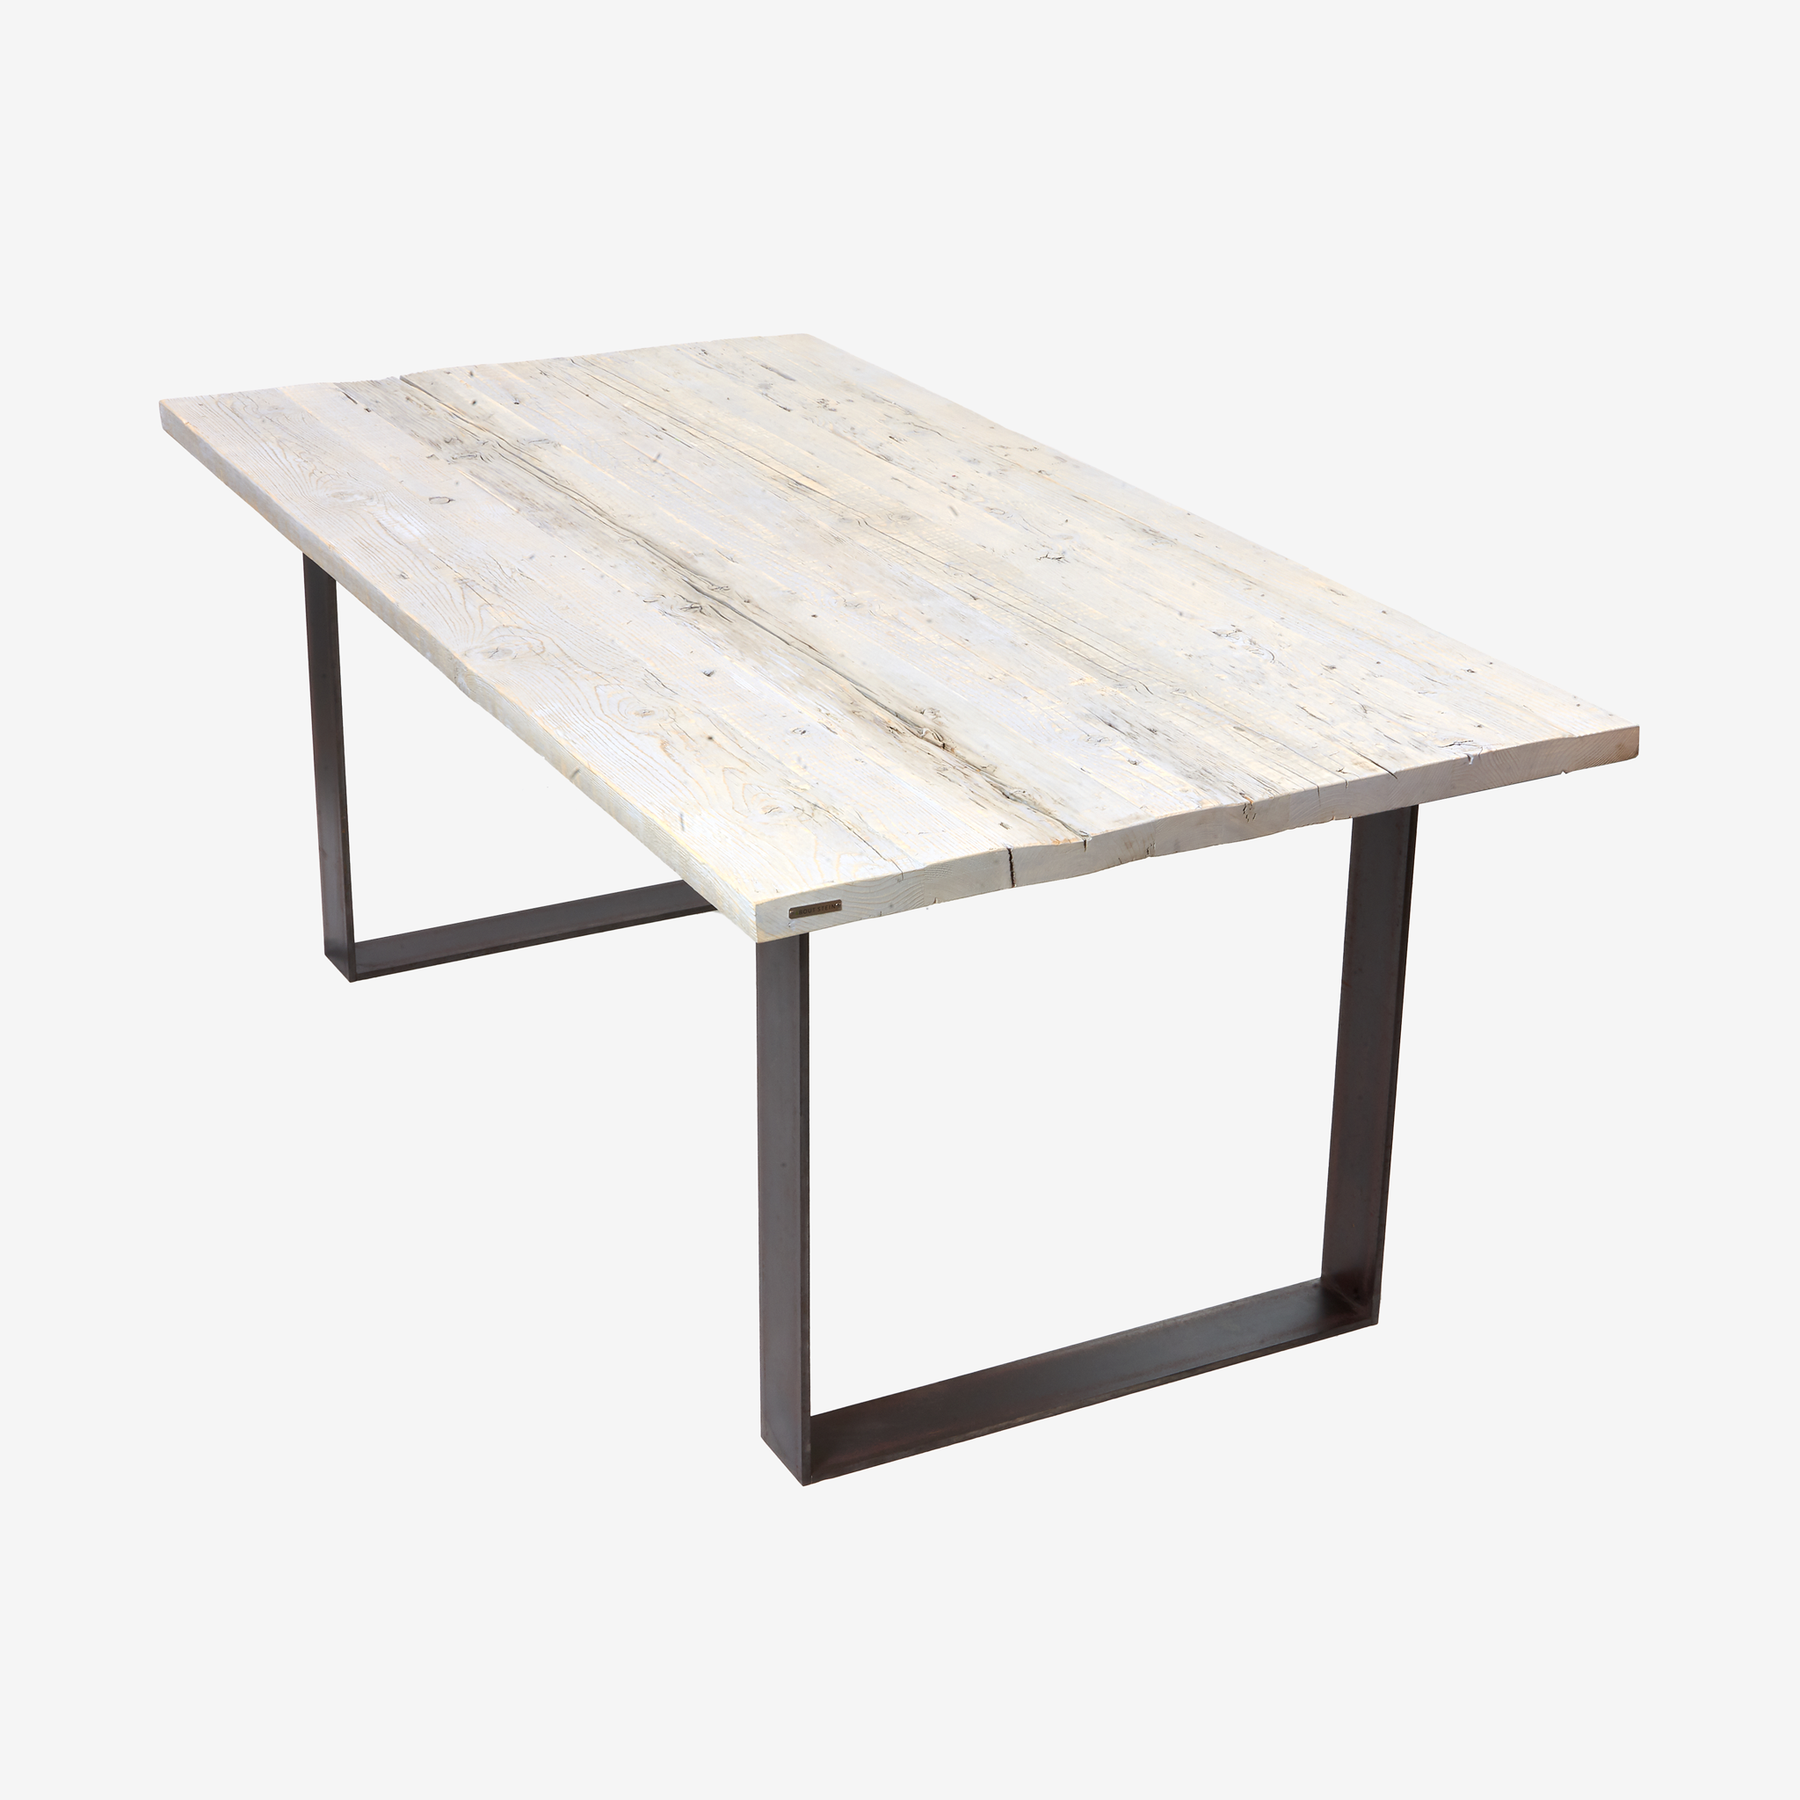 Aufgebauter Tisch aus Altholz mit weißer Oberfläche und zwei transparent lackierten Rohstahl-Frames als Fußgestell